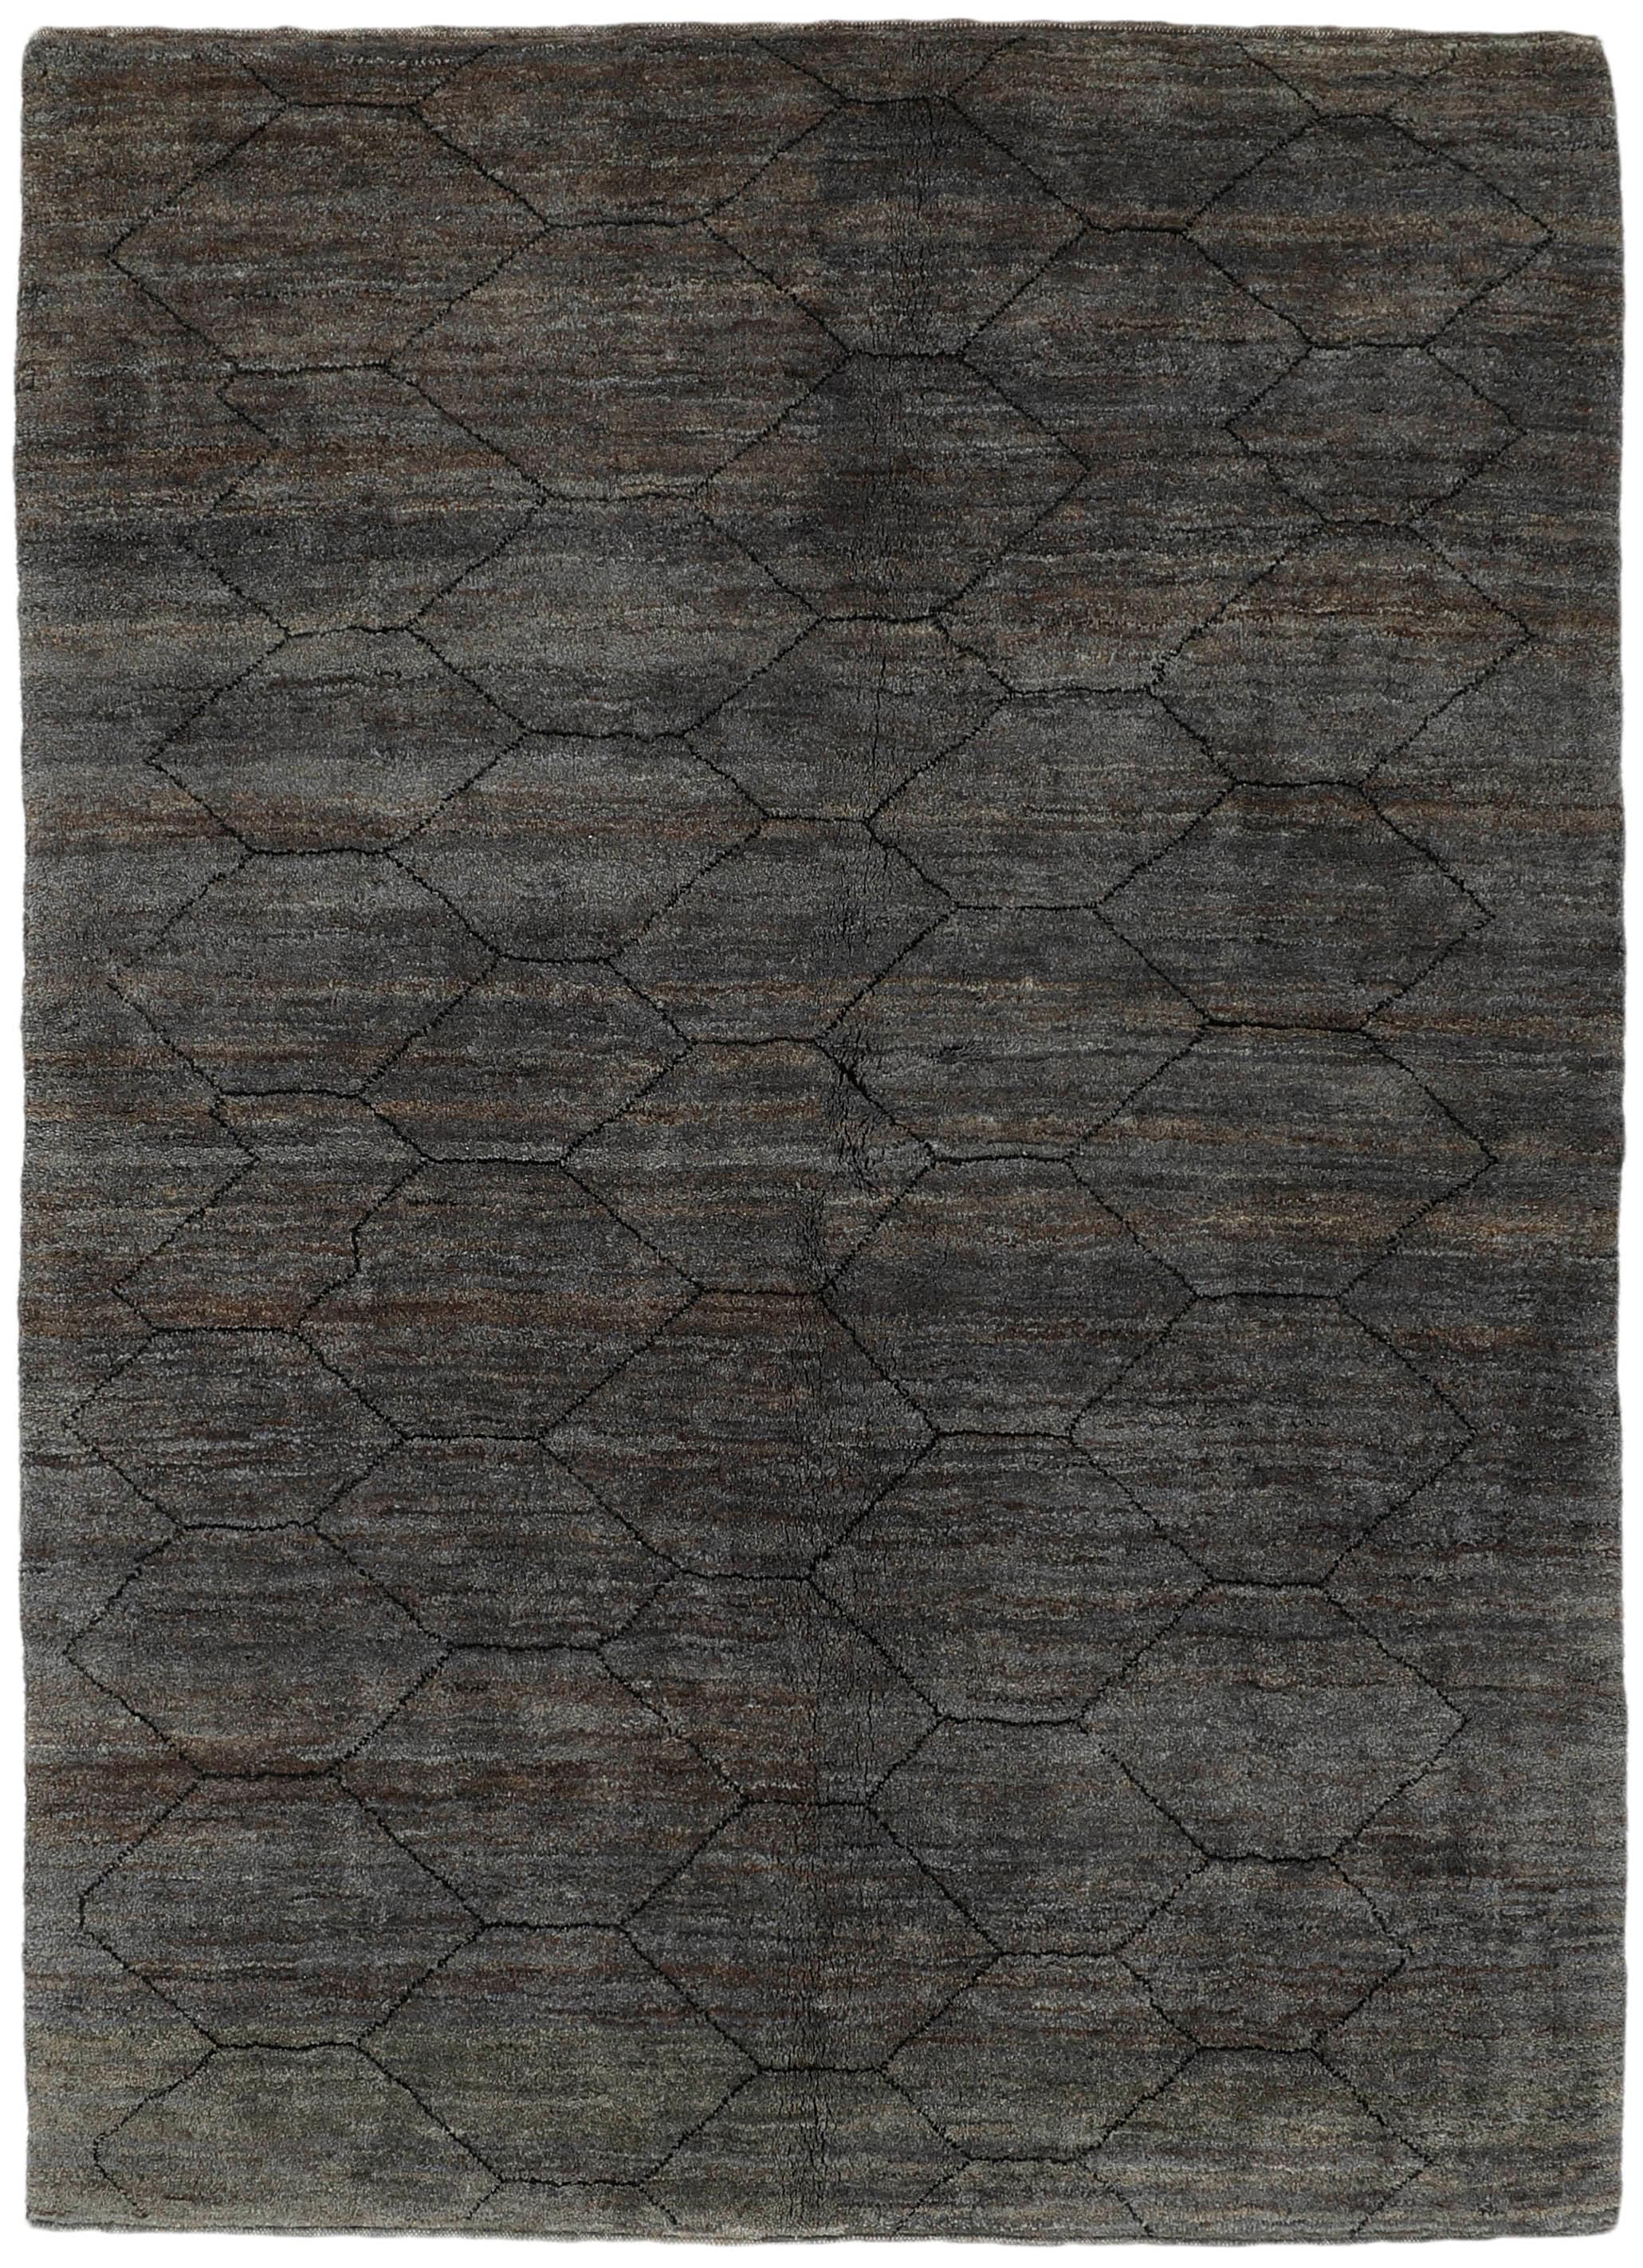 Authentic Oriental Kelim flatweave rug in black and brown